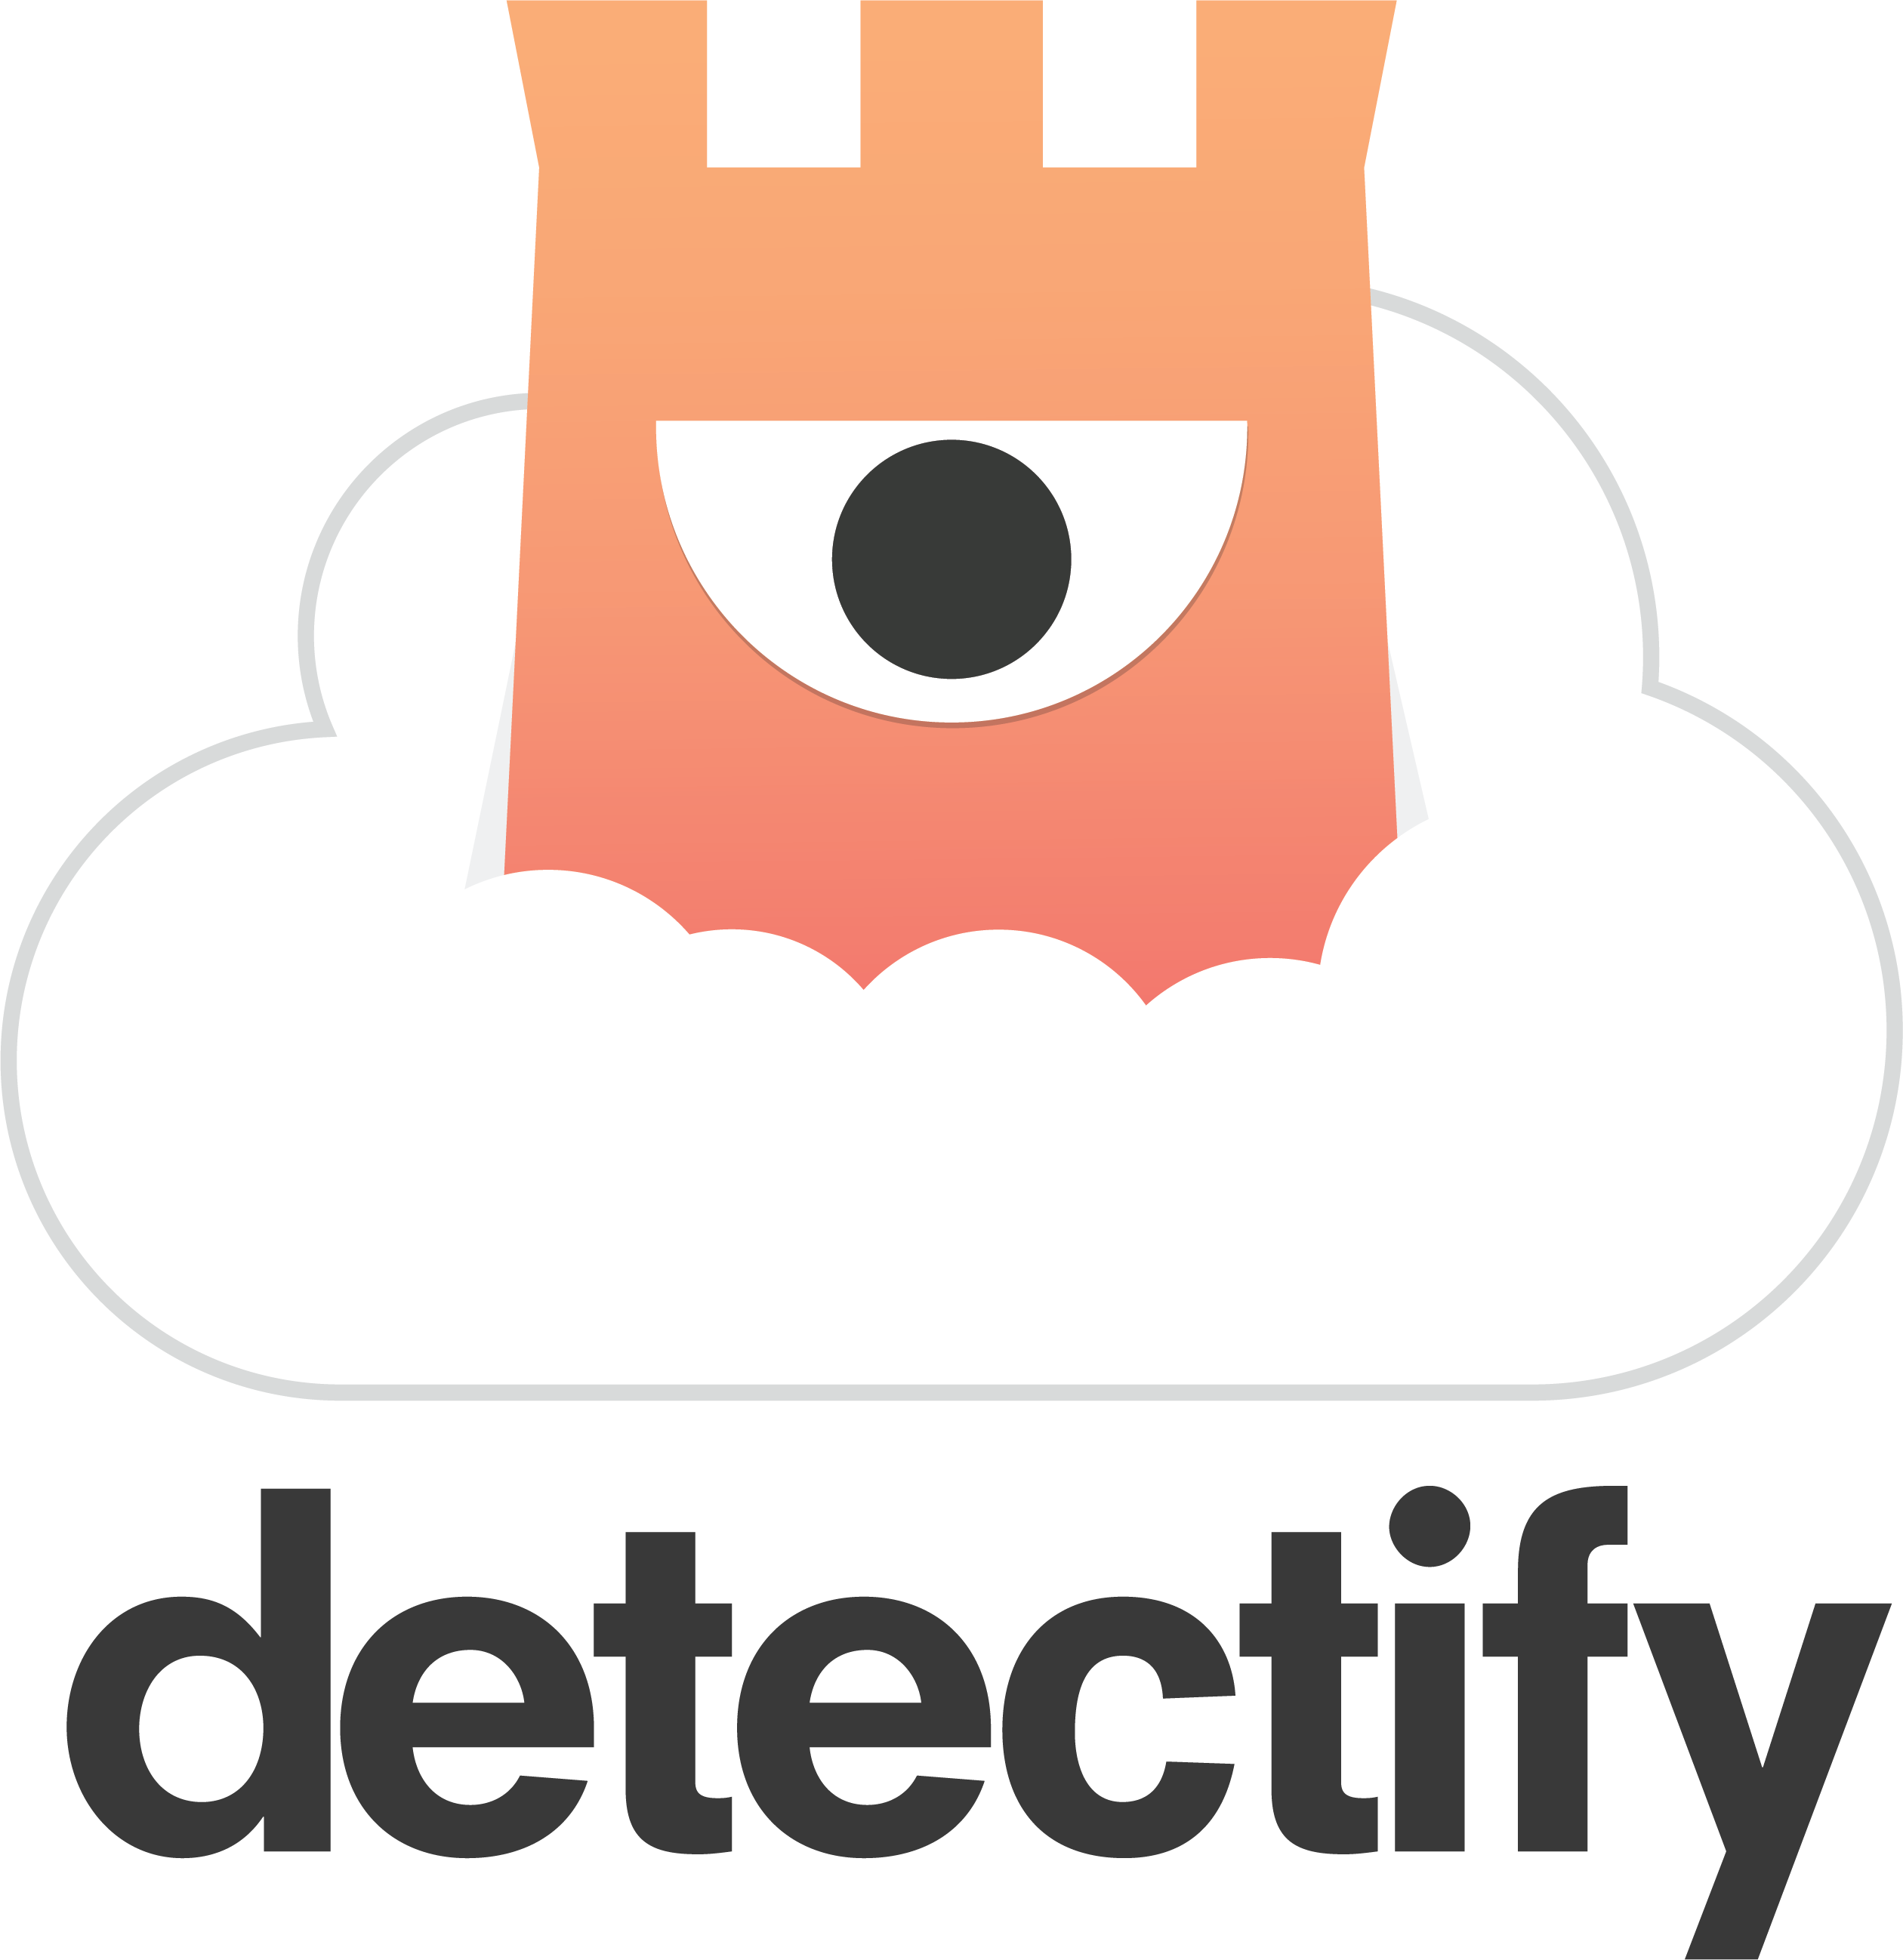 Detectify